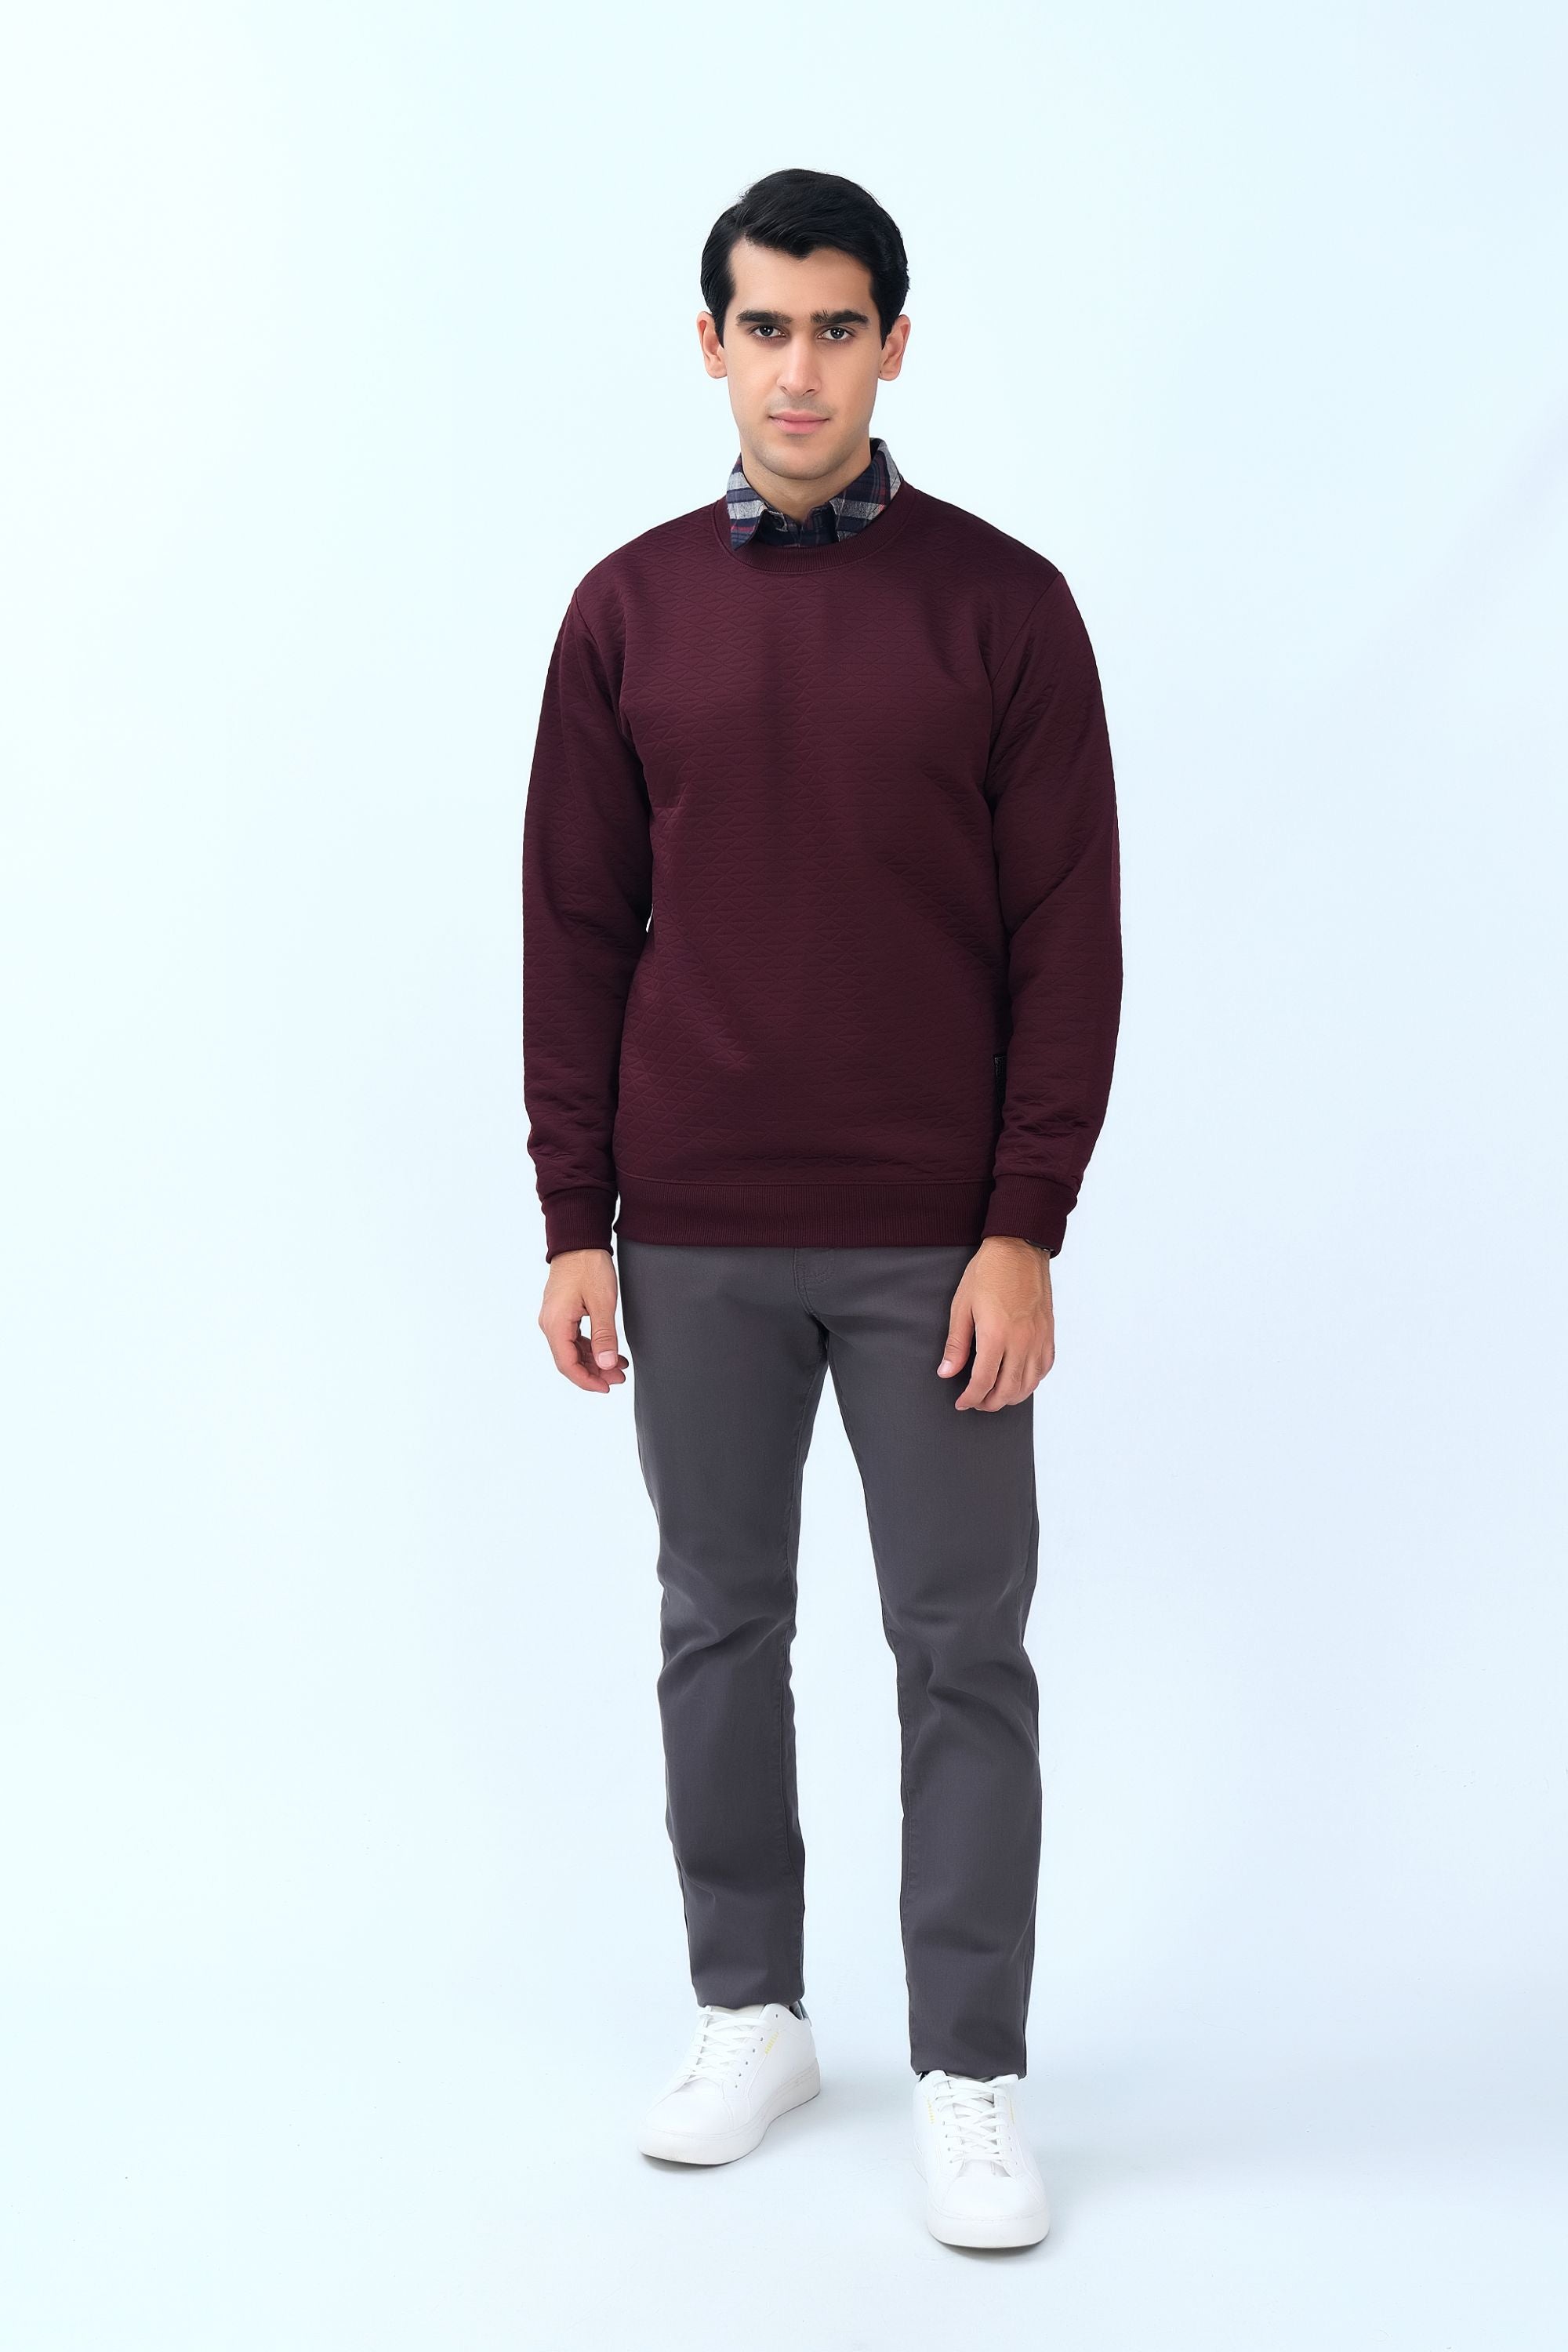 Super Comfy Maroon Sweatshirt